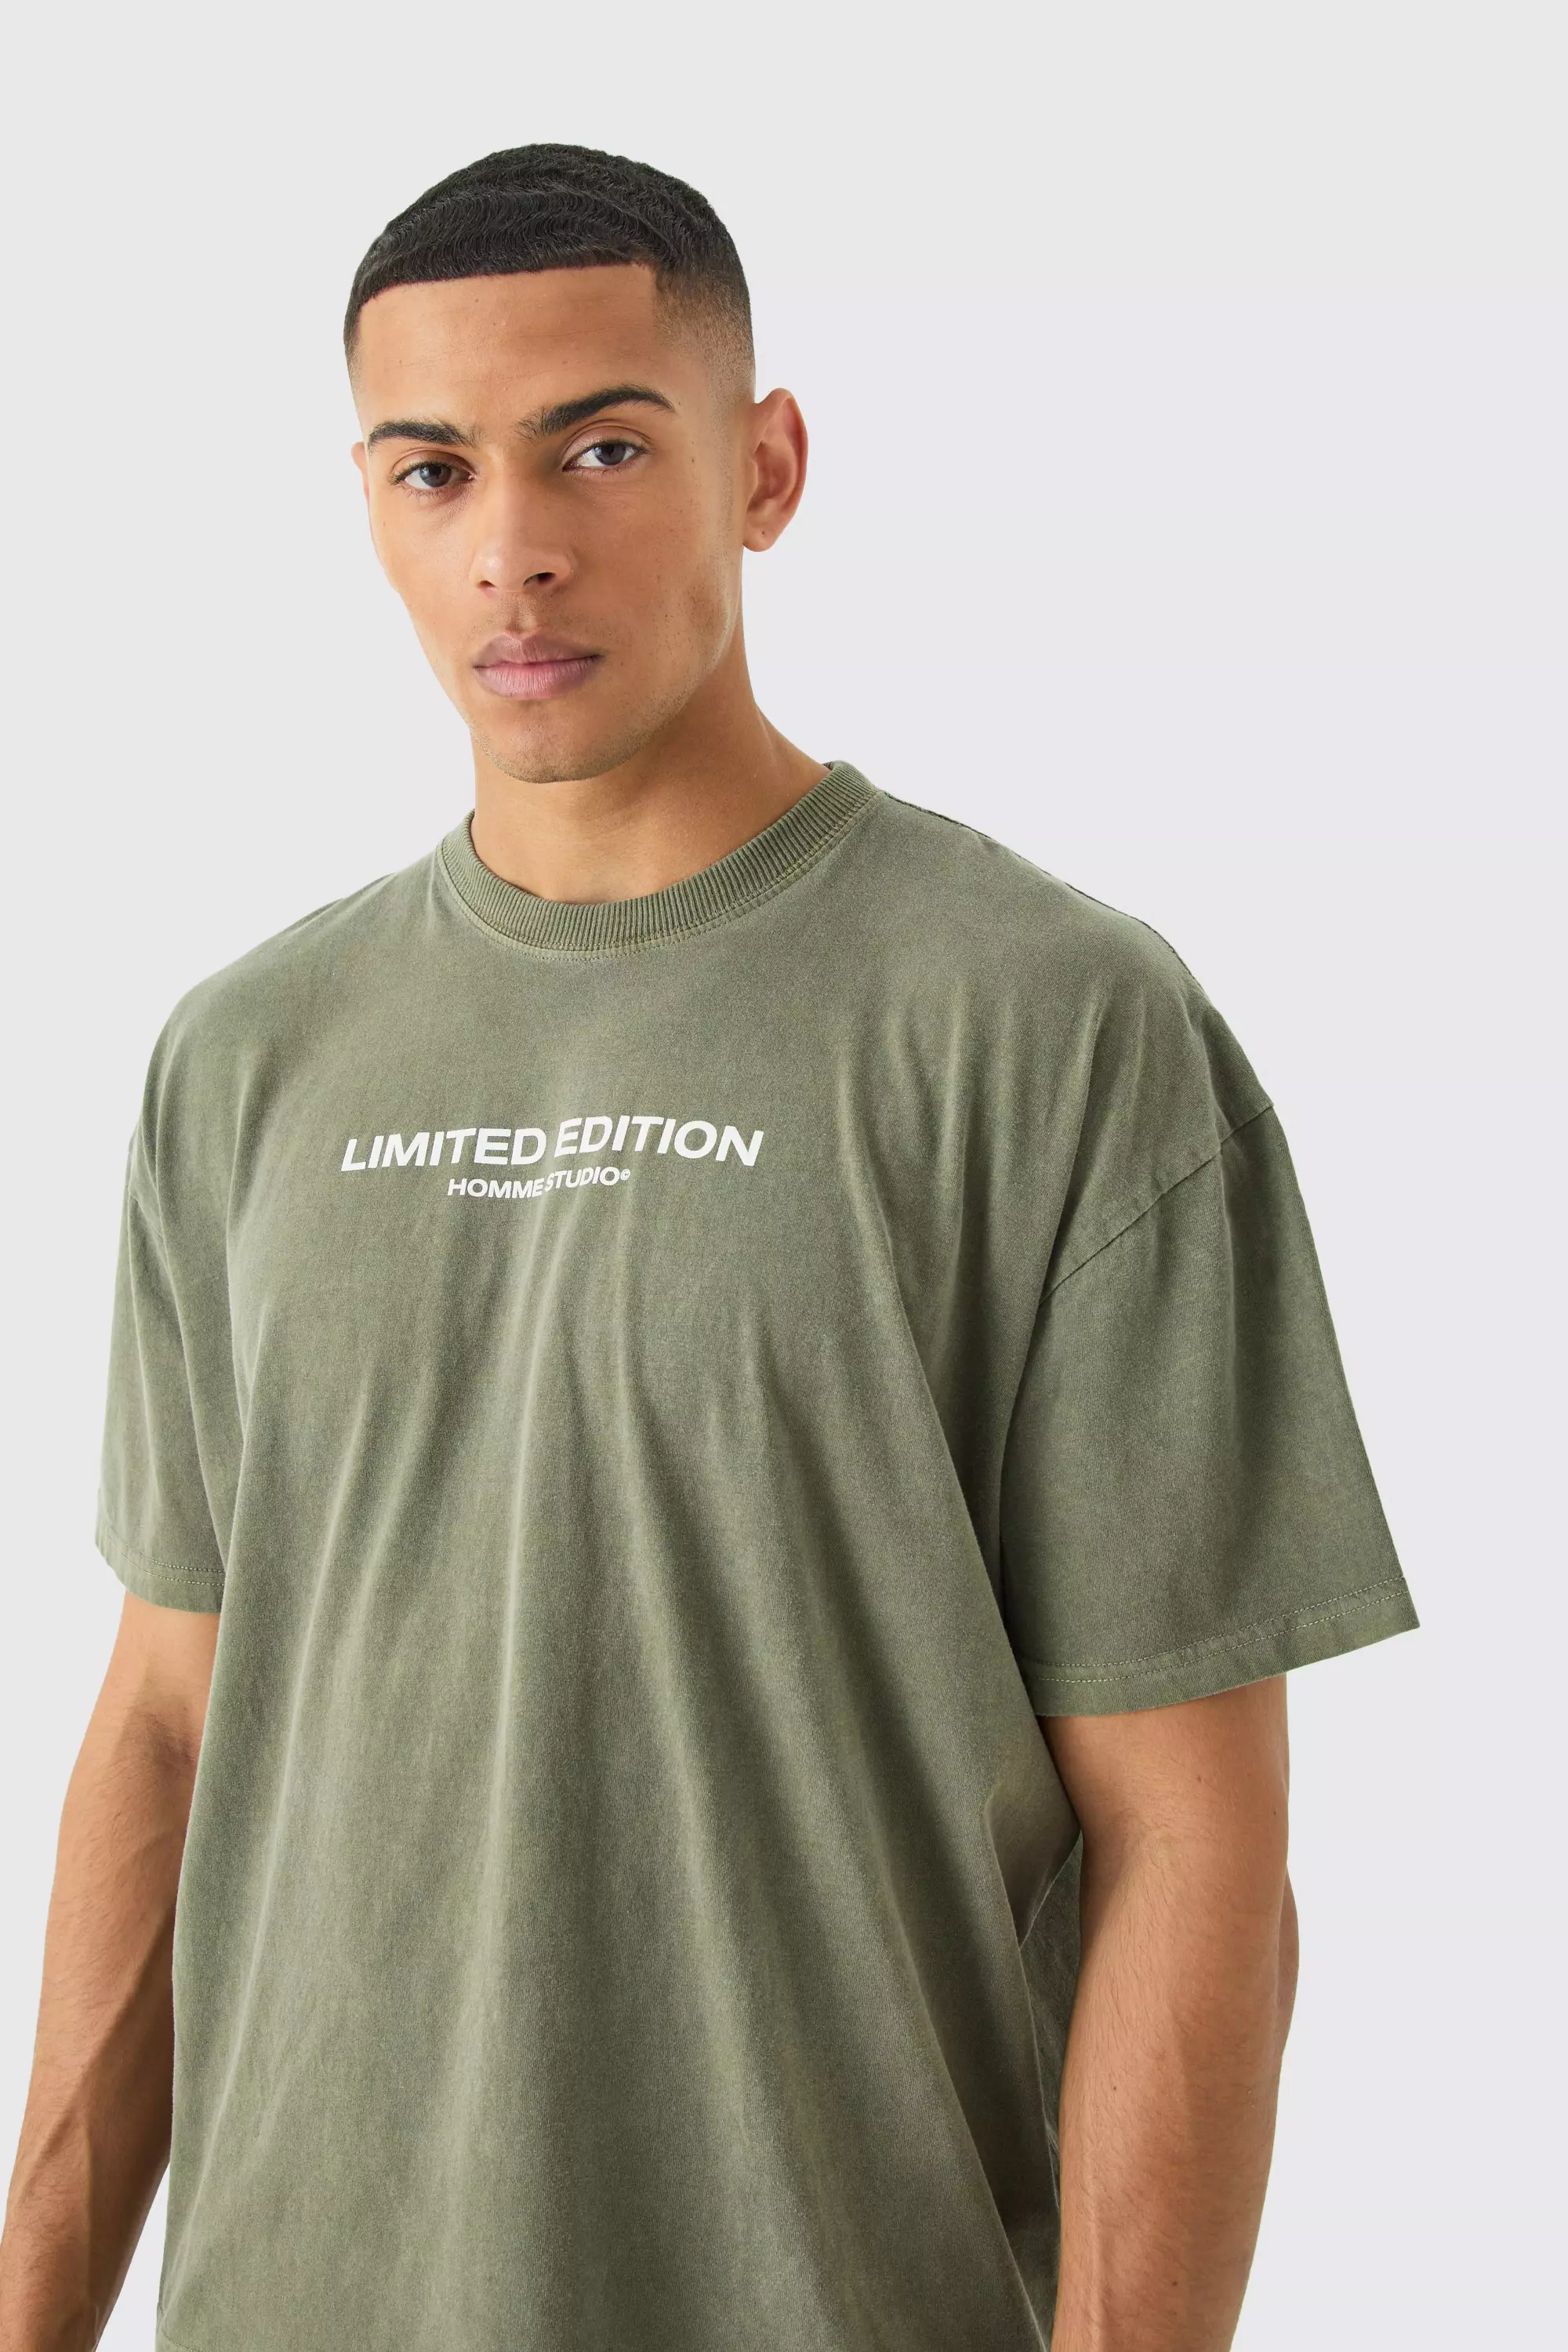 Oversized Overdye Limited Edition T-shirt Khaki